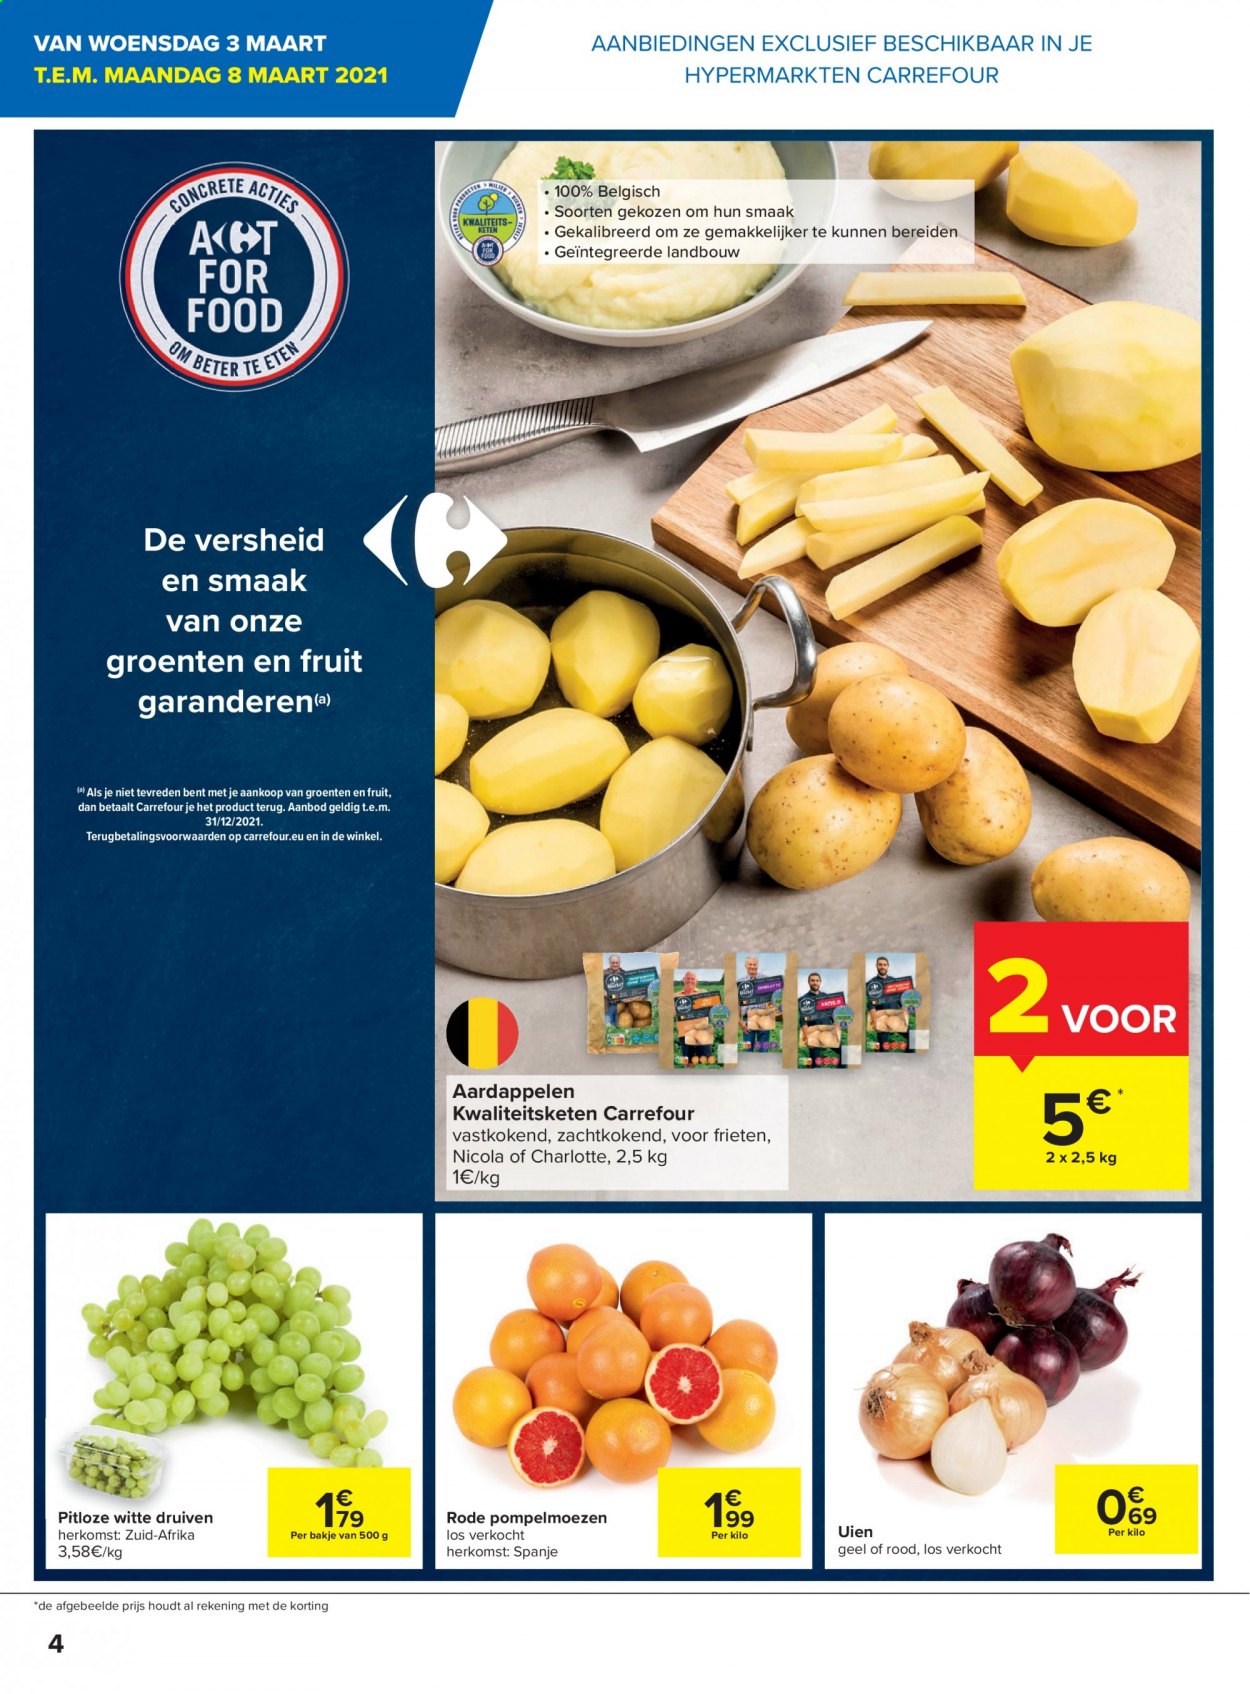 thumbnail - Carrefour hypermarkt-aanbieding - 03/03/2021 - 15/03/2021 -  producten in de aanbieding - aardappelen, druiven. Pagina 4.